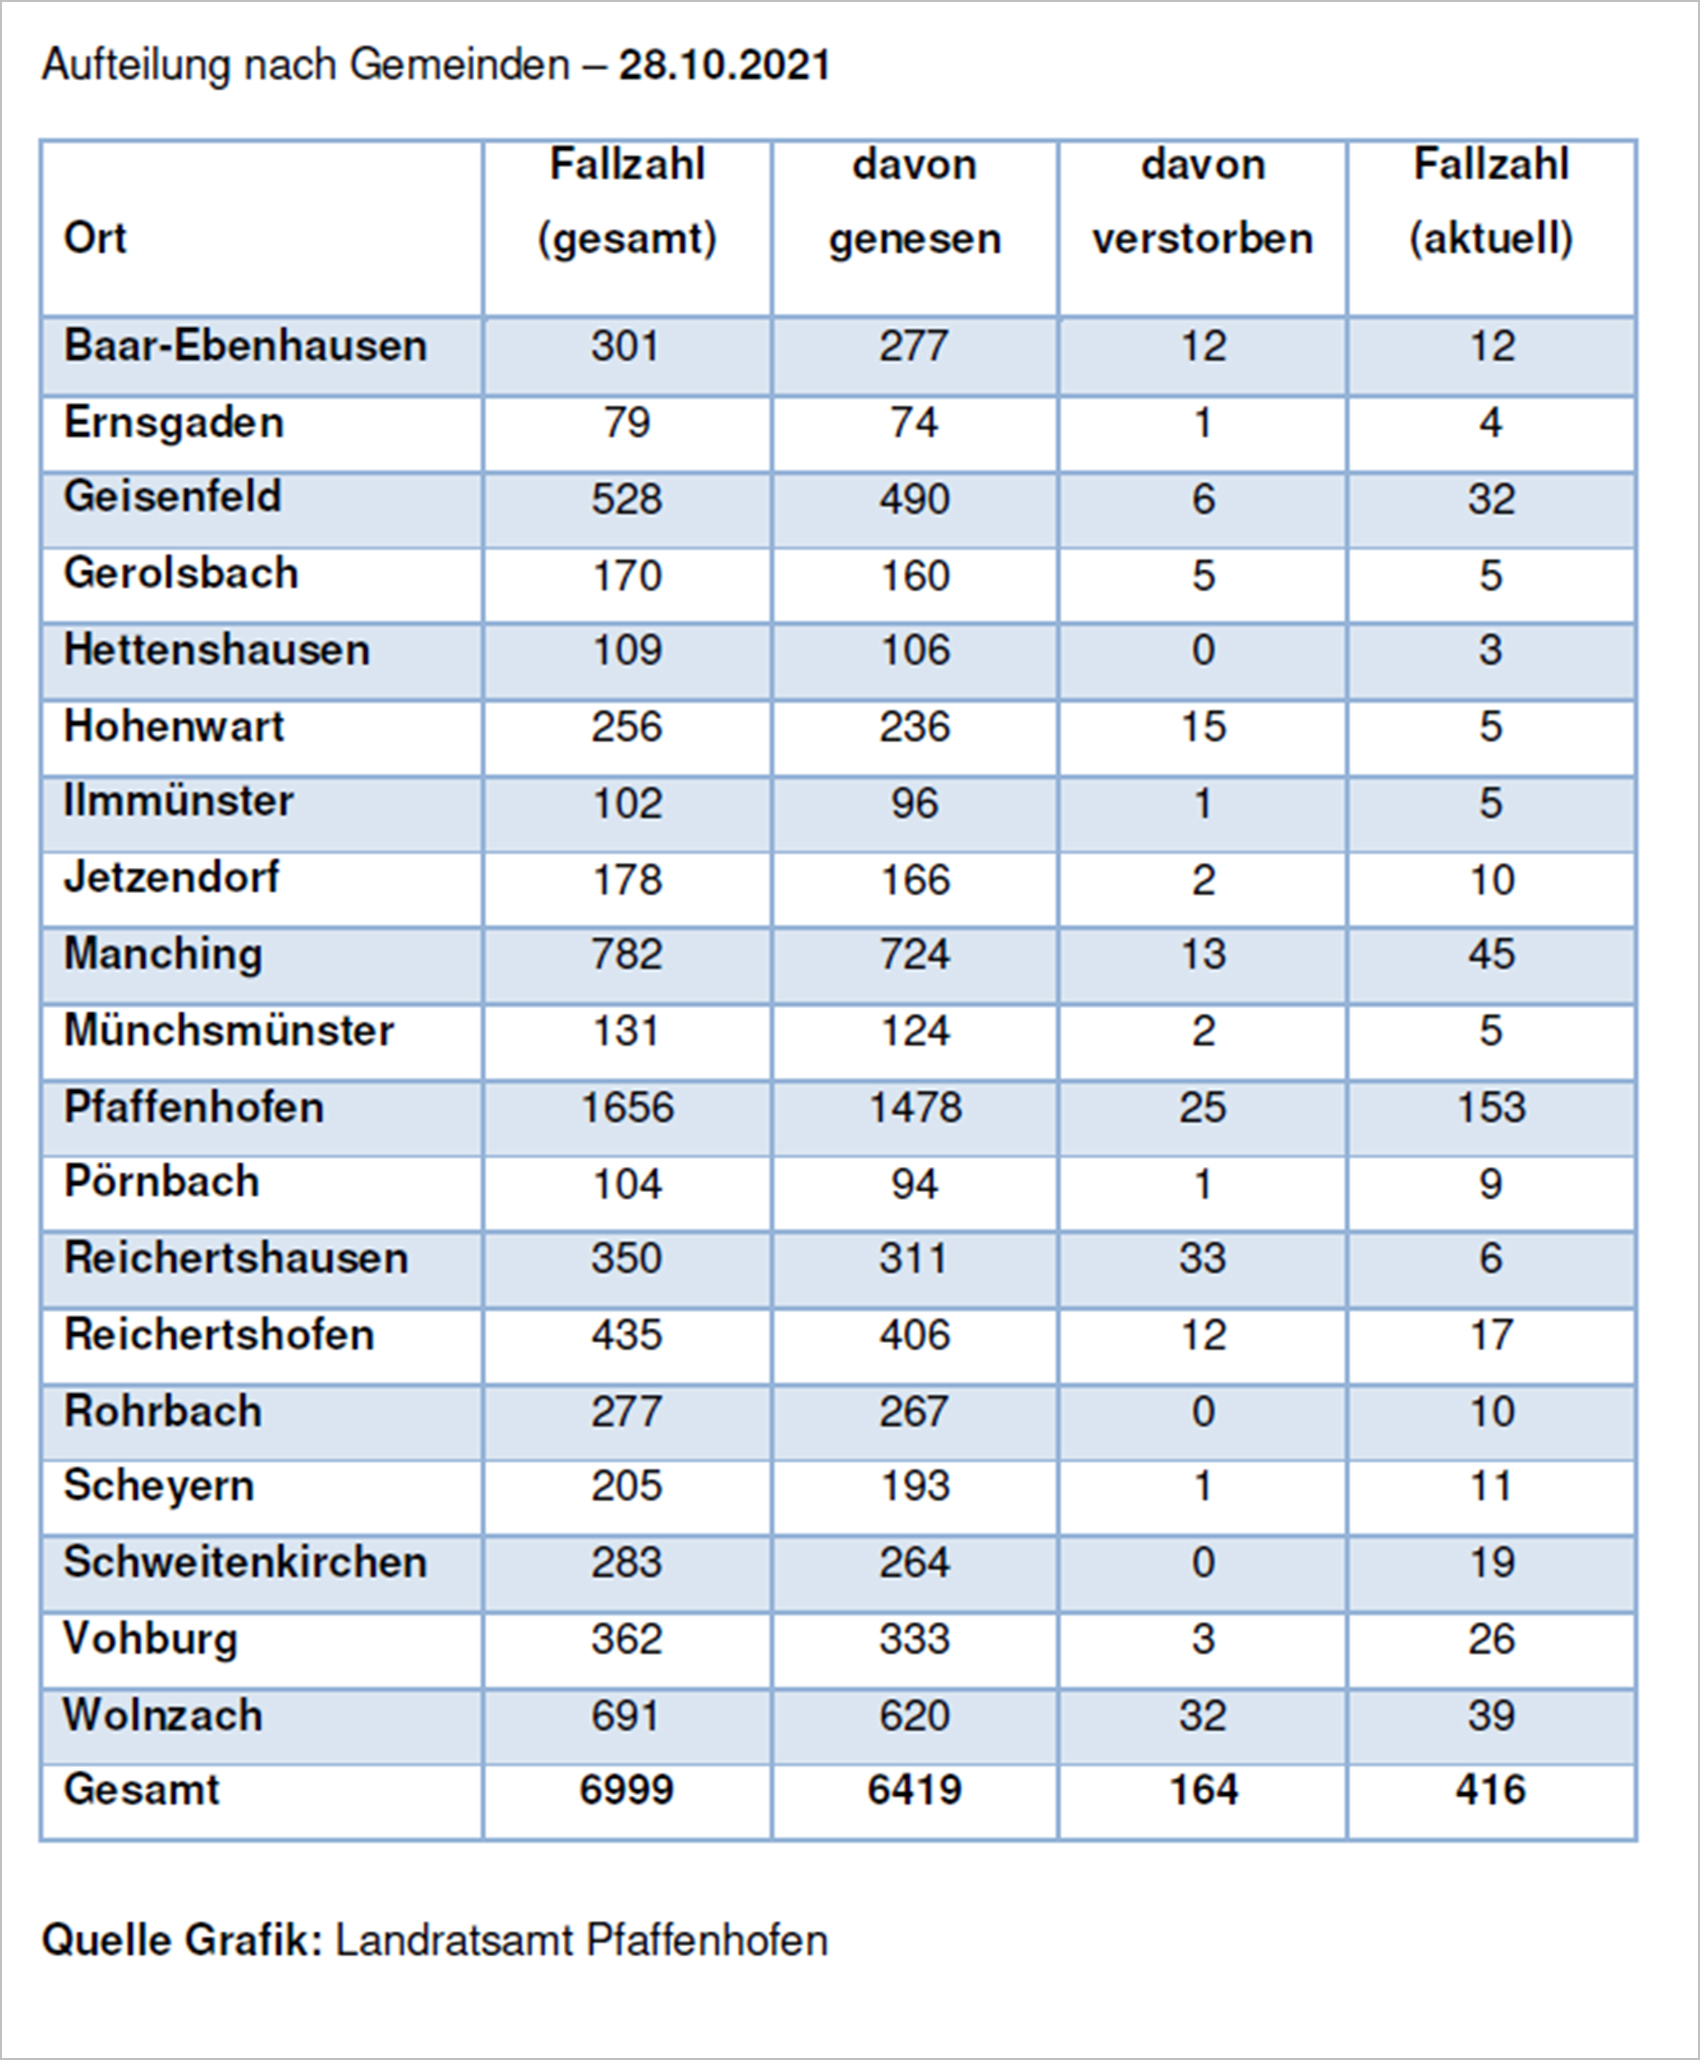 Verteilung der Fallzahlen auf die Landkreisgemeinden - 28.10.2021